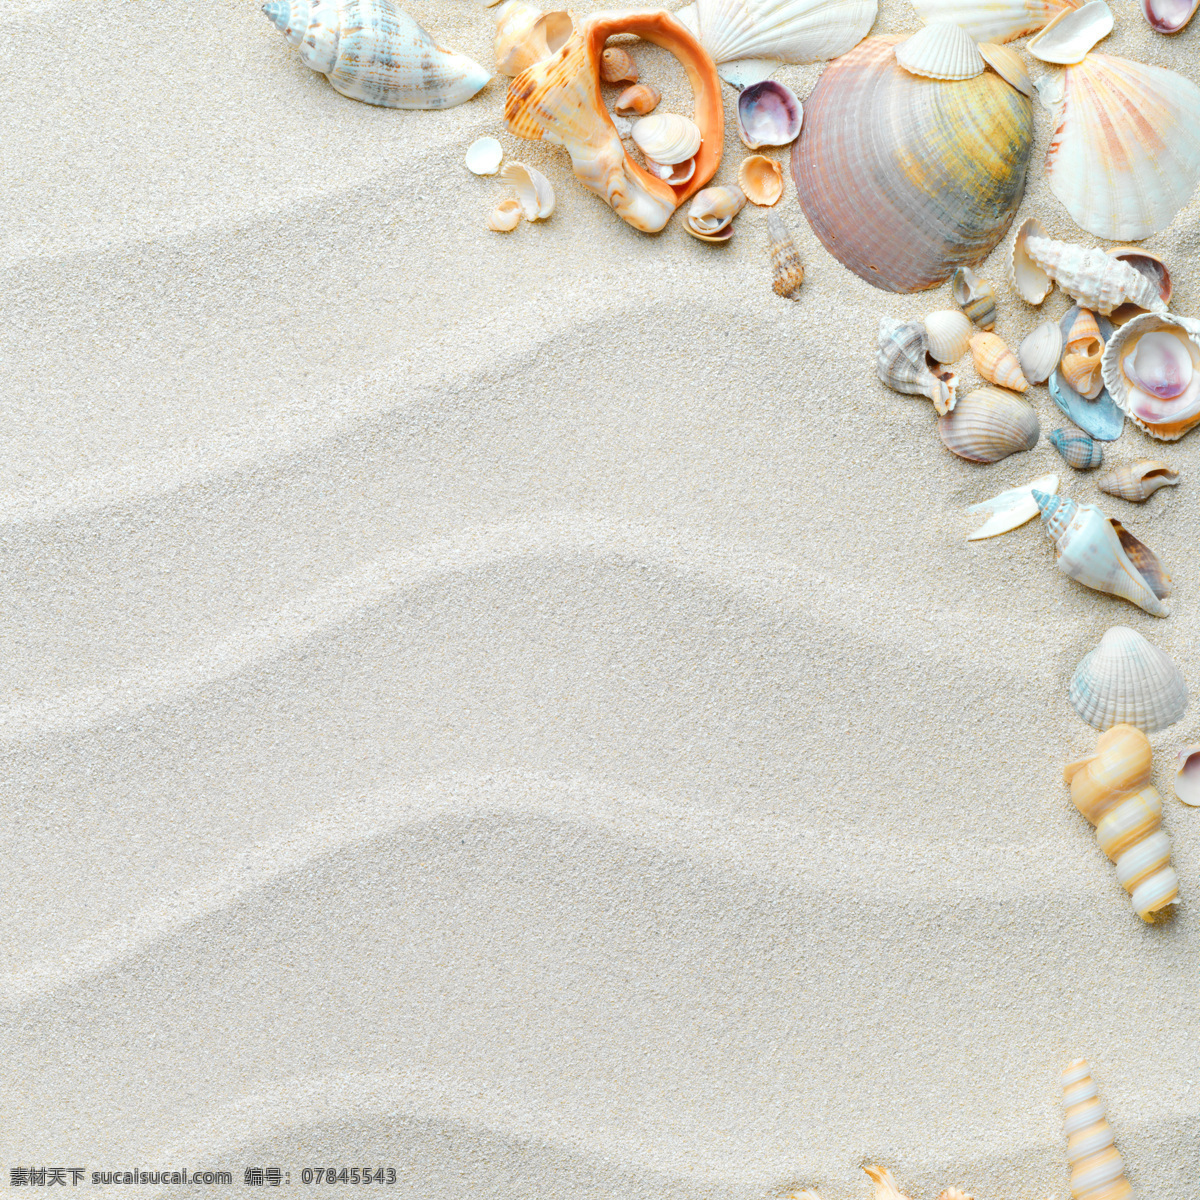 沙滩 贝壳 沙滩贝壳 风景大图 自然风光 自然景观 创意摄影 五星贝壳 高清图片 摄影图片 大海图片 风景图片